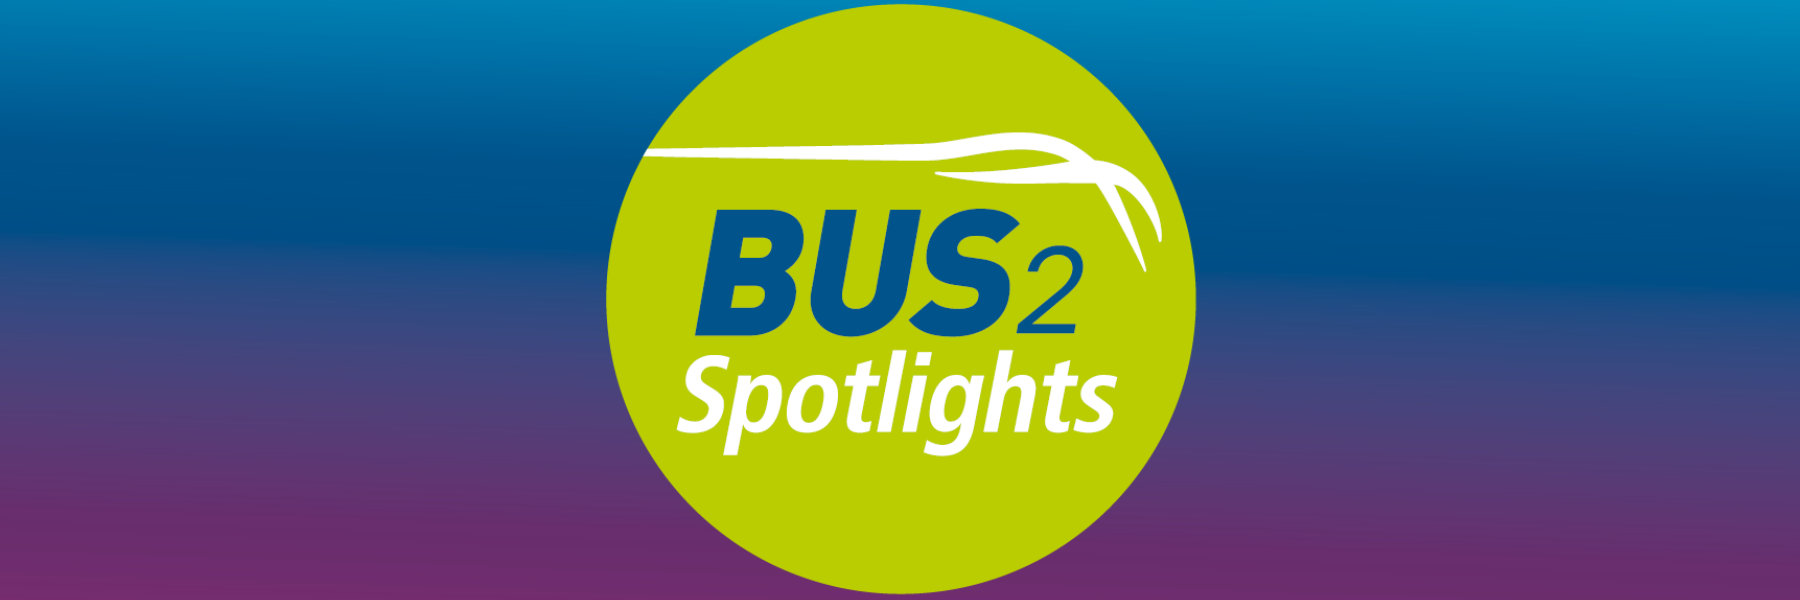 Abgebildet ist das runde Logo der BUS2Spotlights, das in den Farben grün, weiß und blau gehalten ist. 